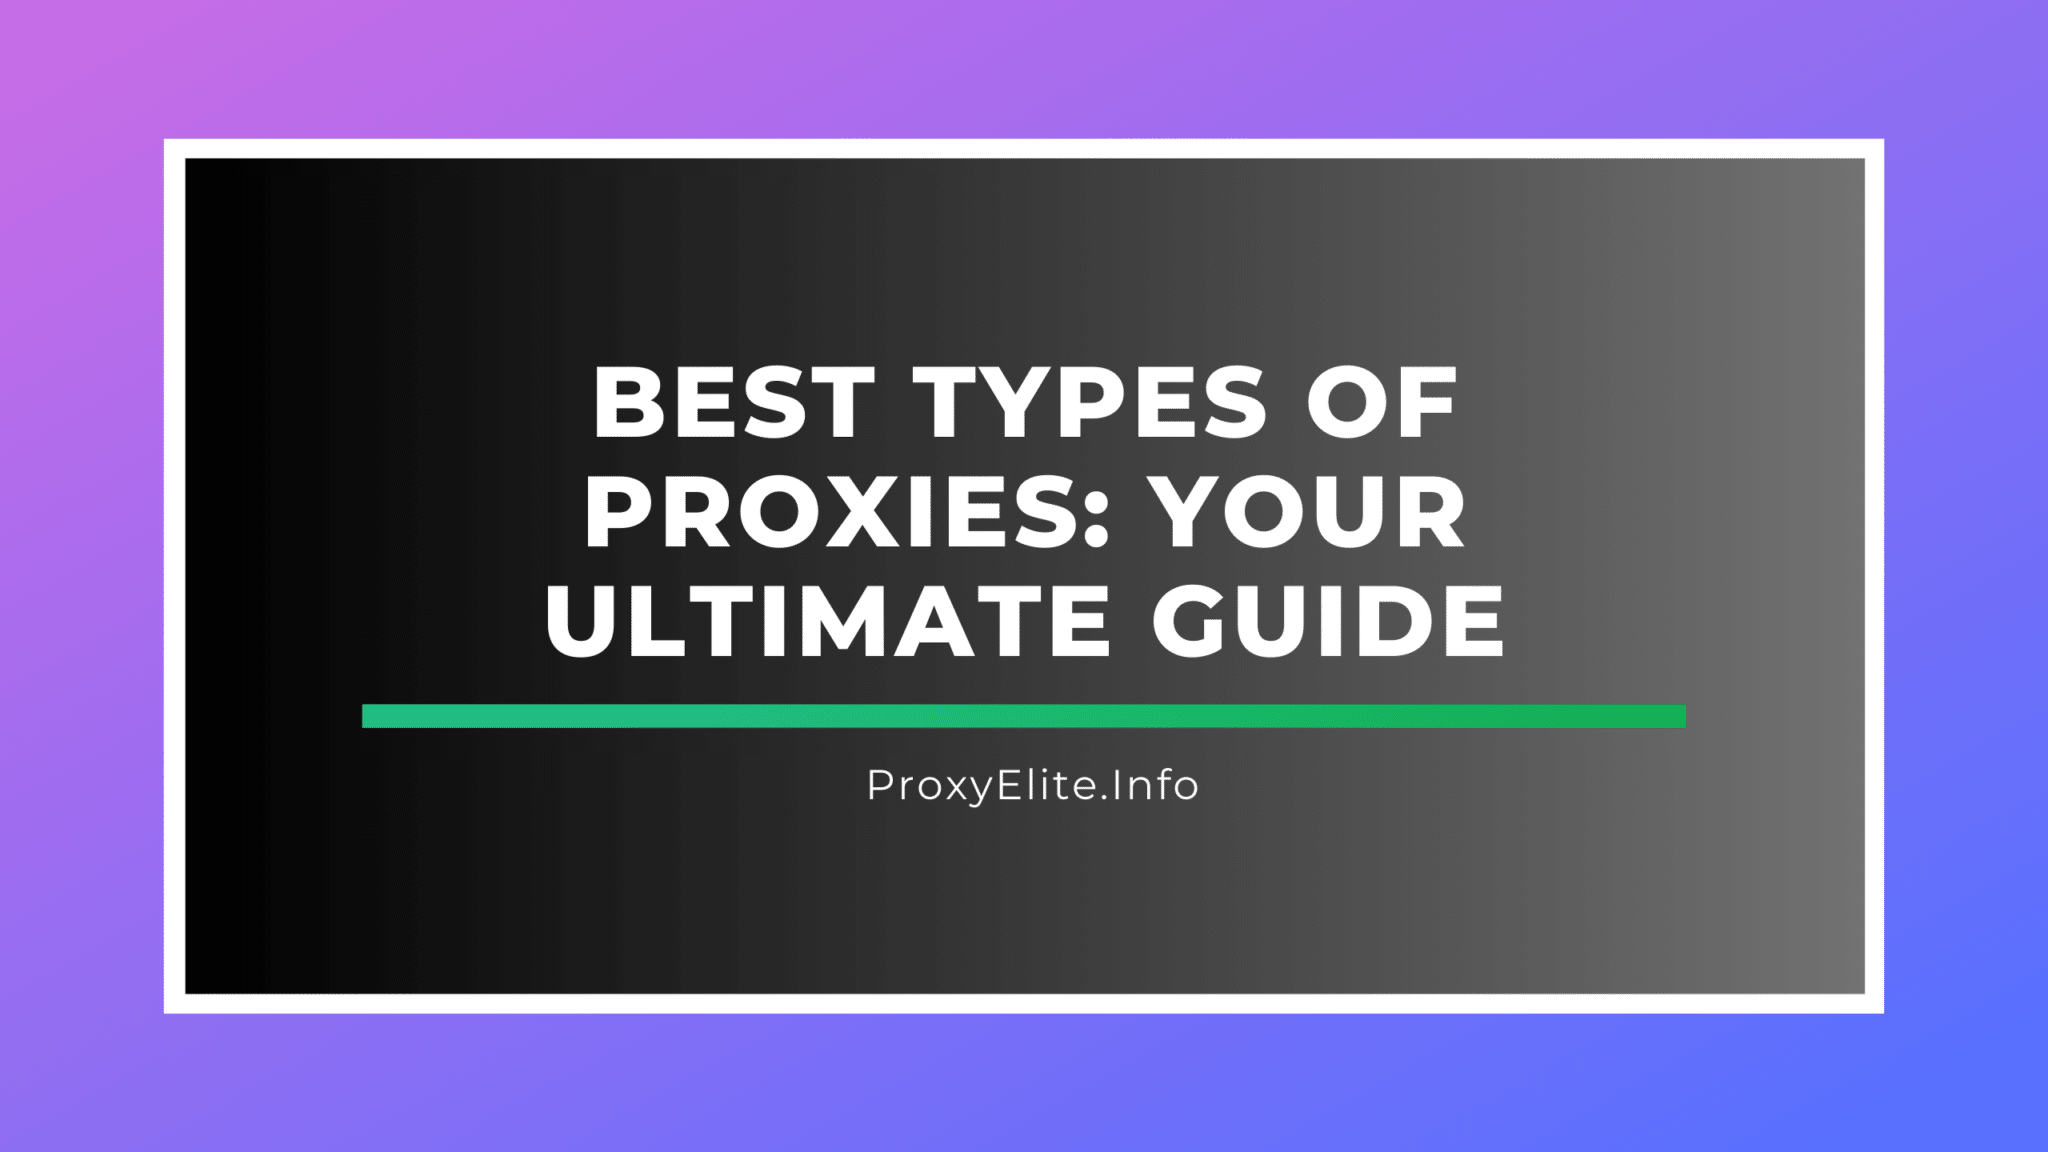 Los mejores tipos de proxies: su guía definitiva